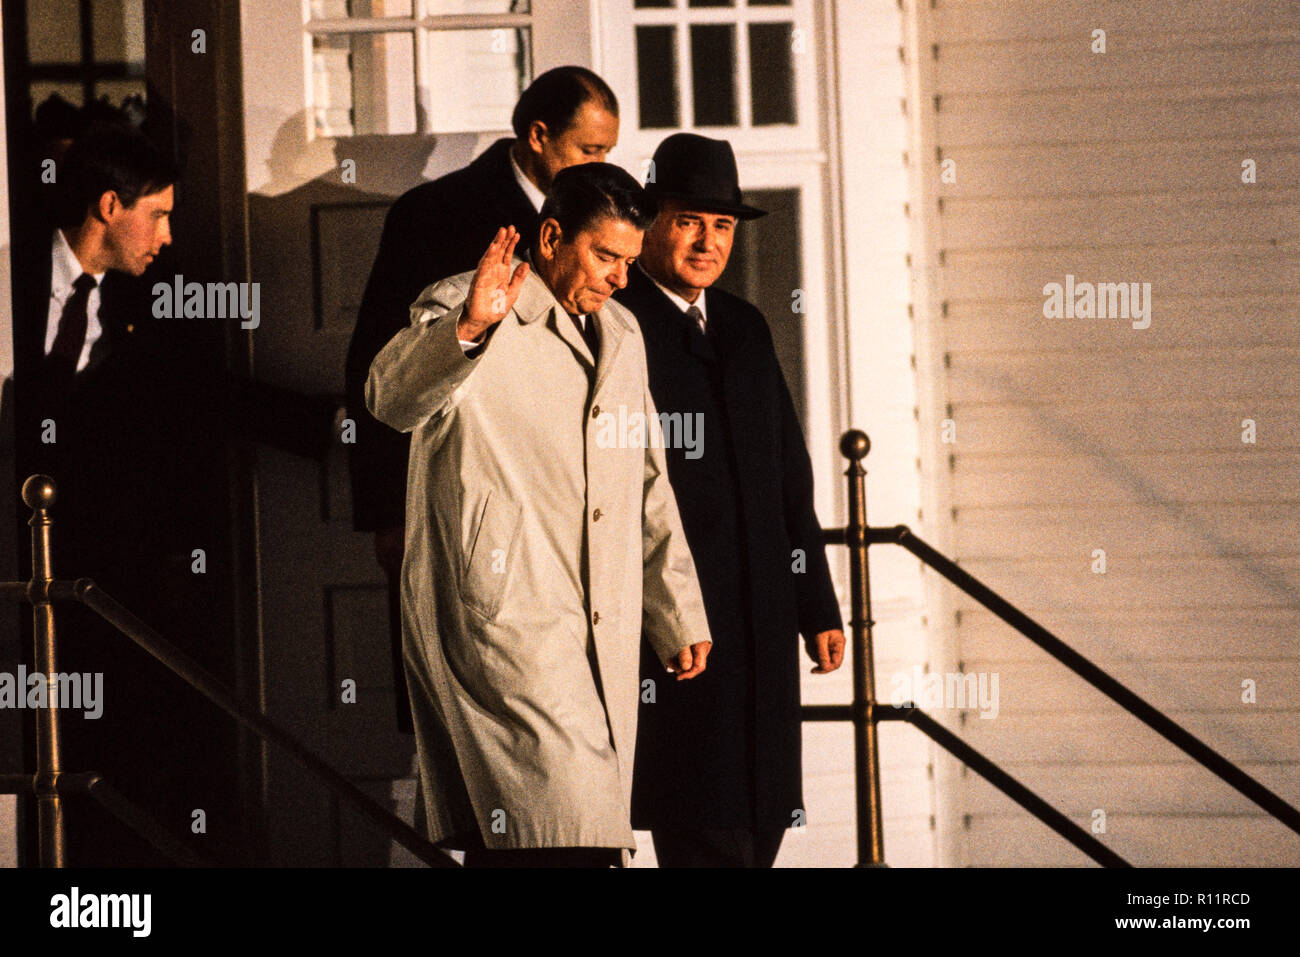 Vertice di Reykjavik incontro del presidente degli Stati Uniti Ronald Reagan e del segretario generale del partito comunista dell'Unione Sovietica Mikhail Gorbachev 11-12 ottobre 1986 Islanda Foto Stock